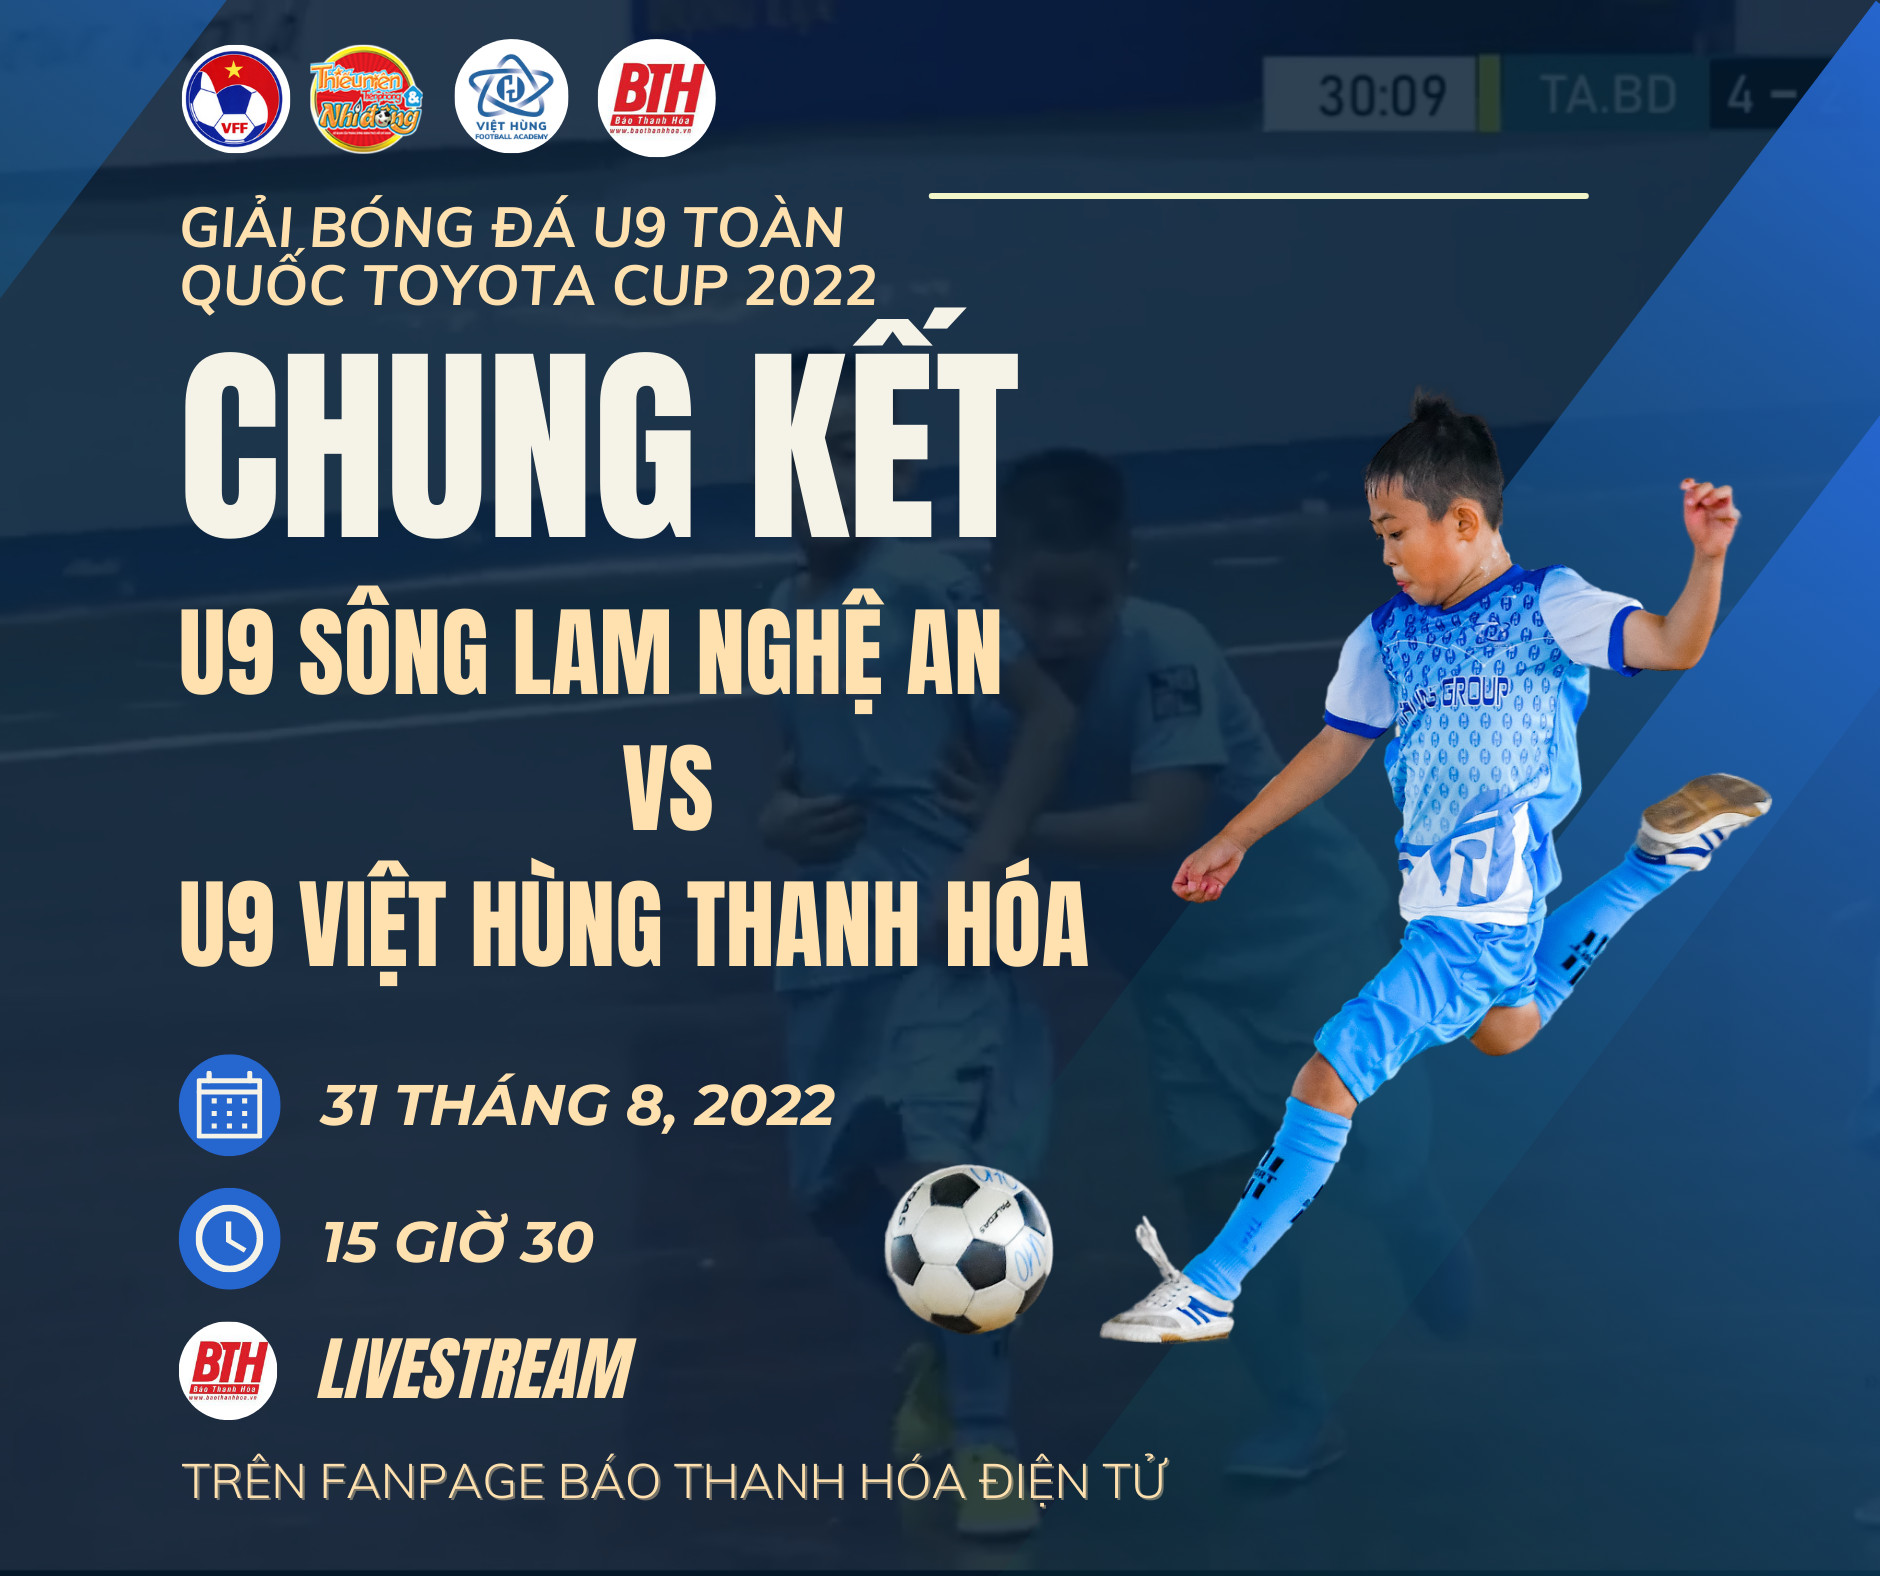 [Video] - Chung kết Giải bóng đá U9 toàn quốc: U9 Việt Hùng Thanh Hóa vs U9 Sông Lam Nghệ An